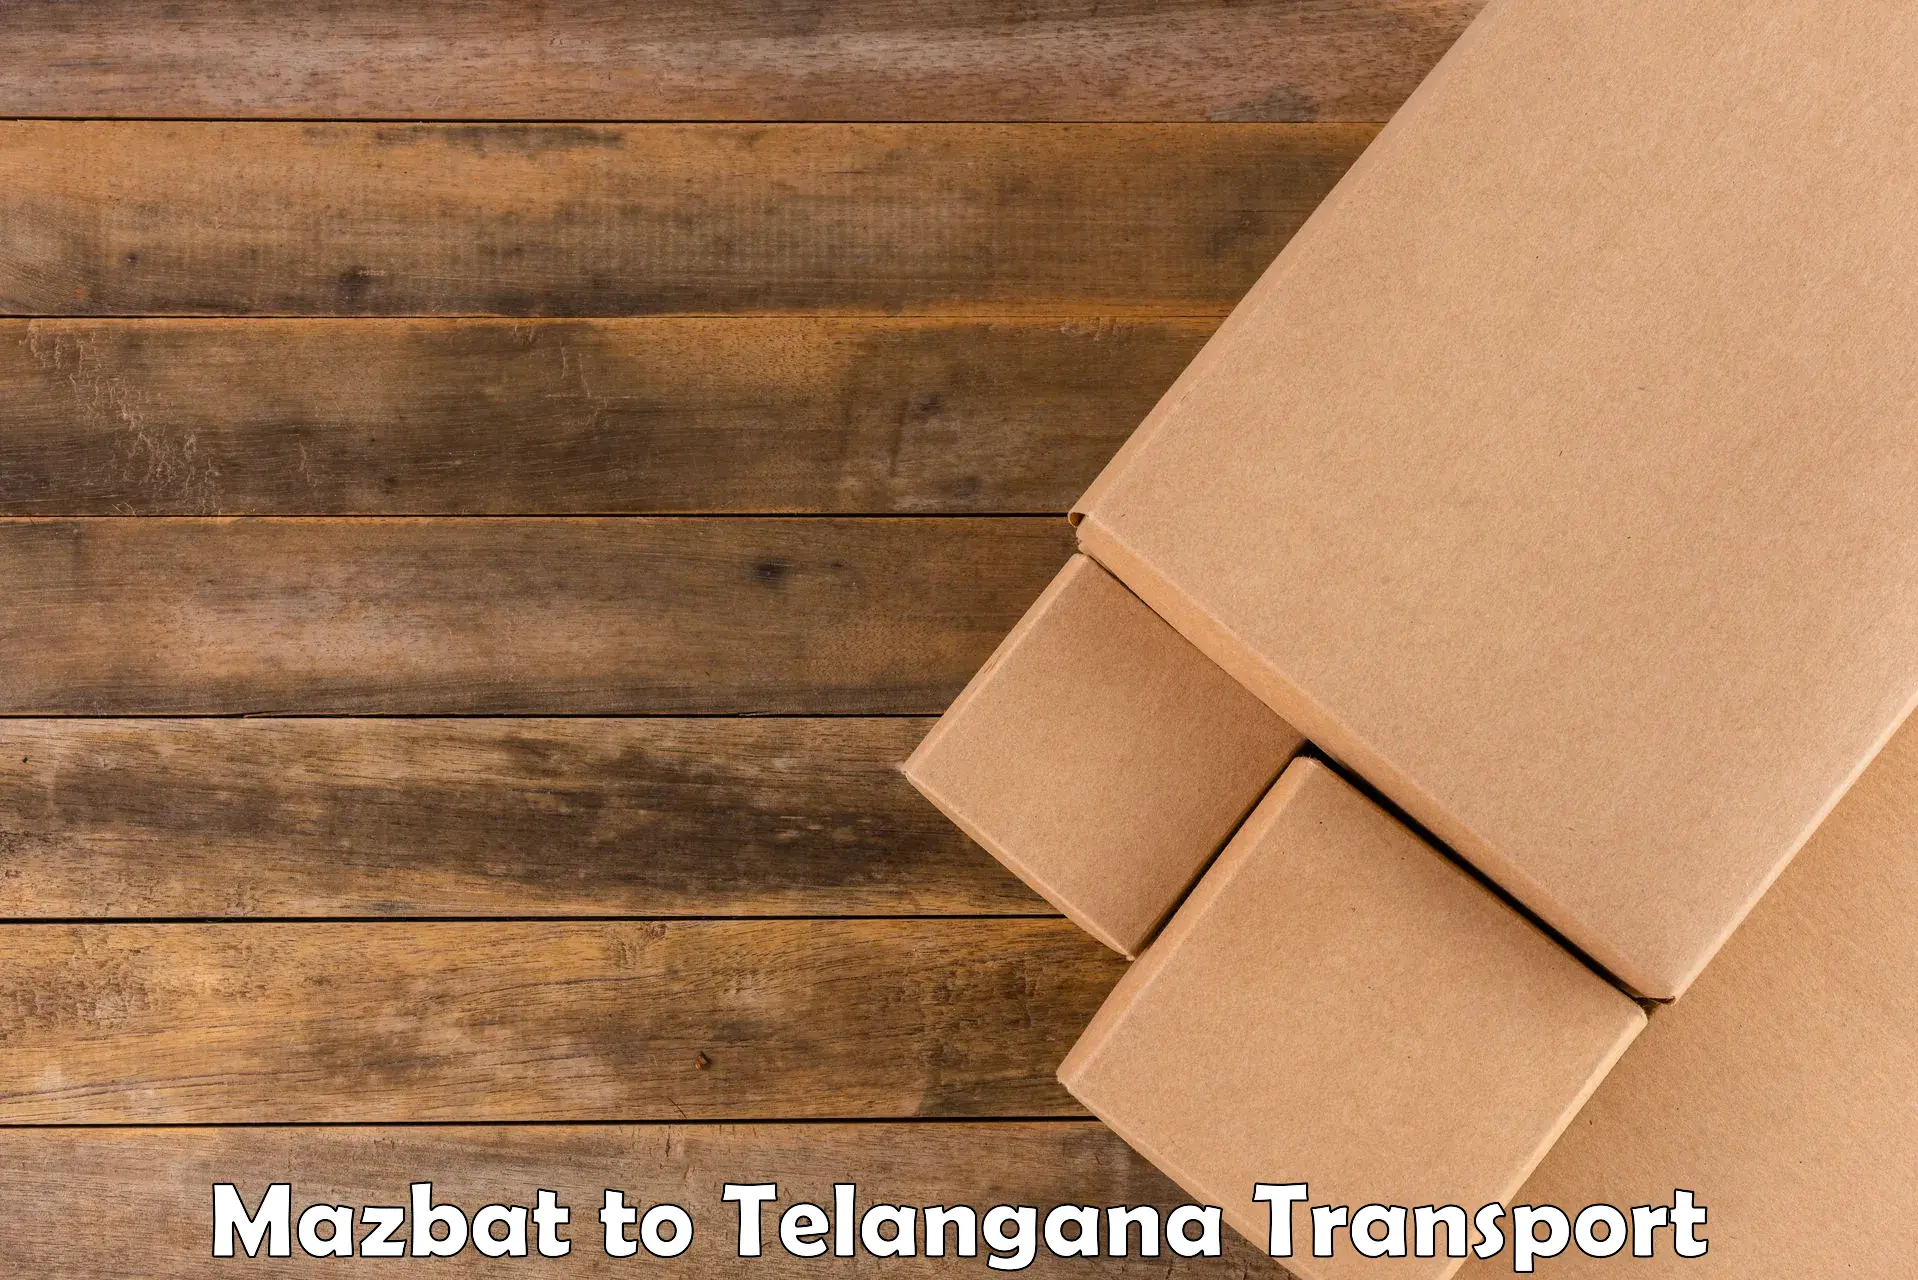 Online transport service Mazbat to Bhongir